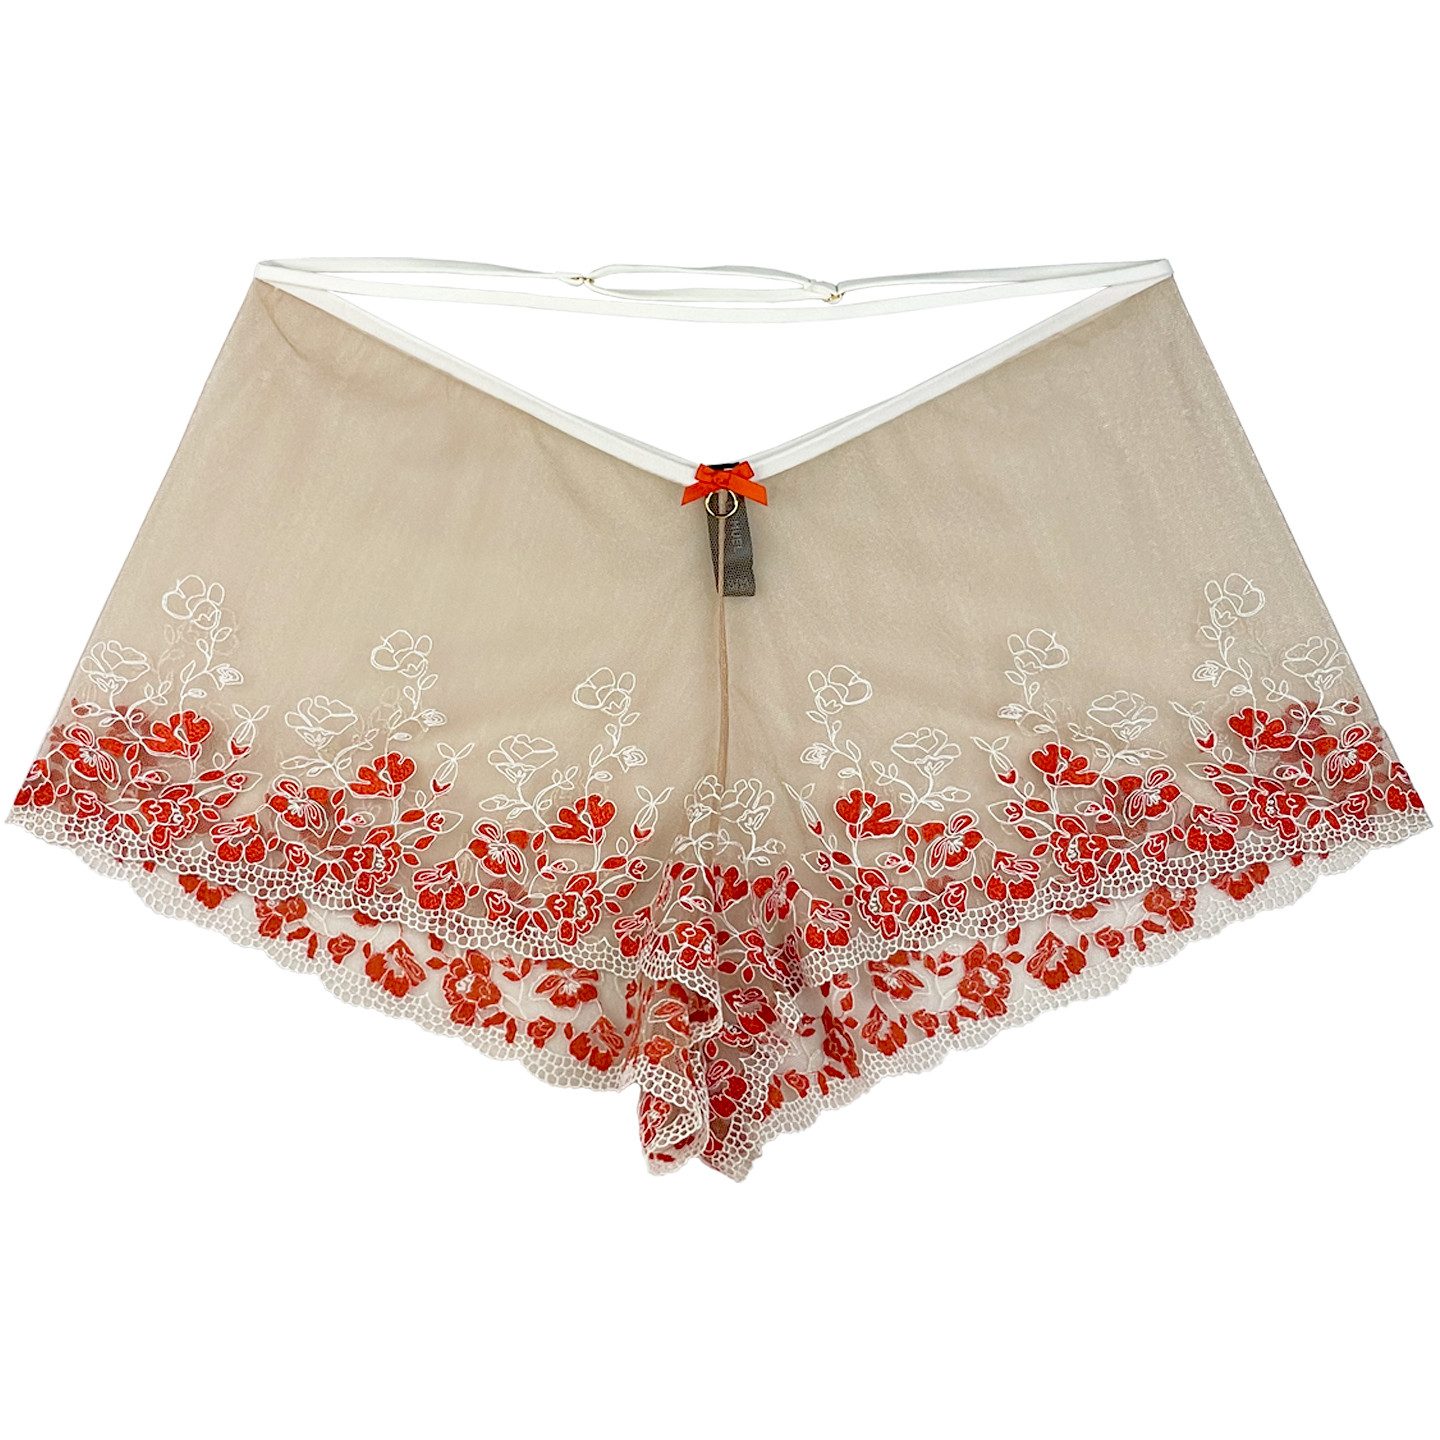 La Muel Lingerie Schlafshorts freche und feminine French Knickers Hose mit verstellbarem Umfang transparent